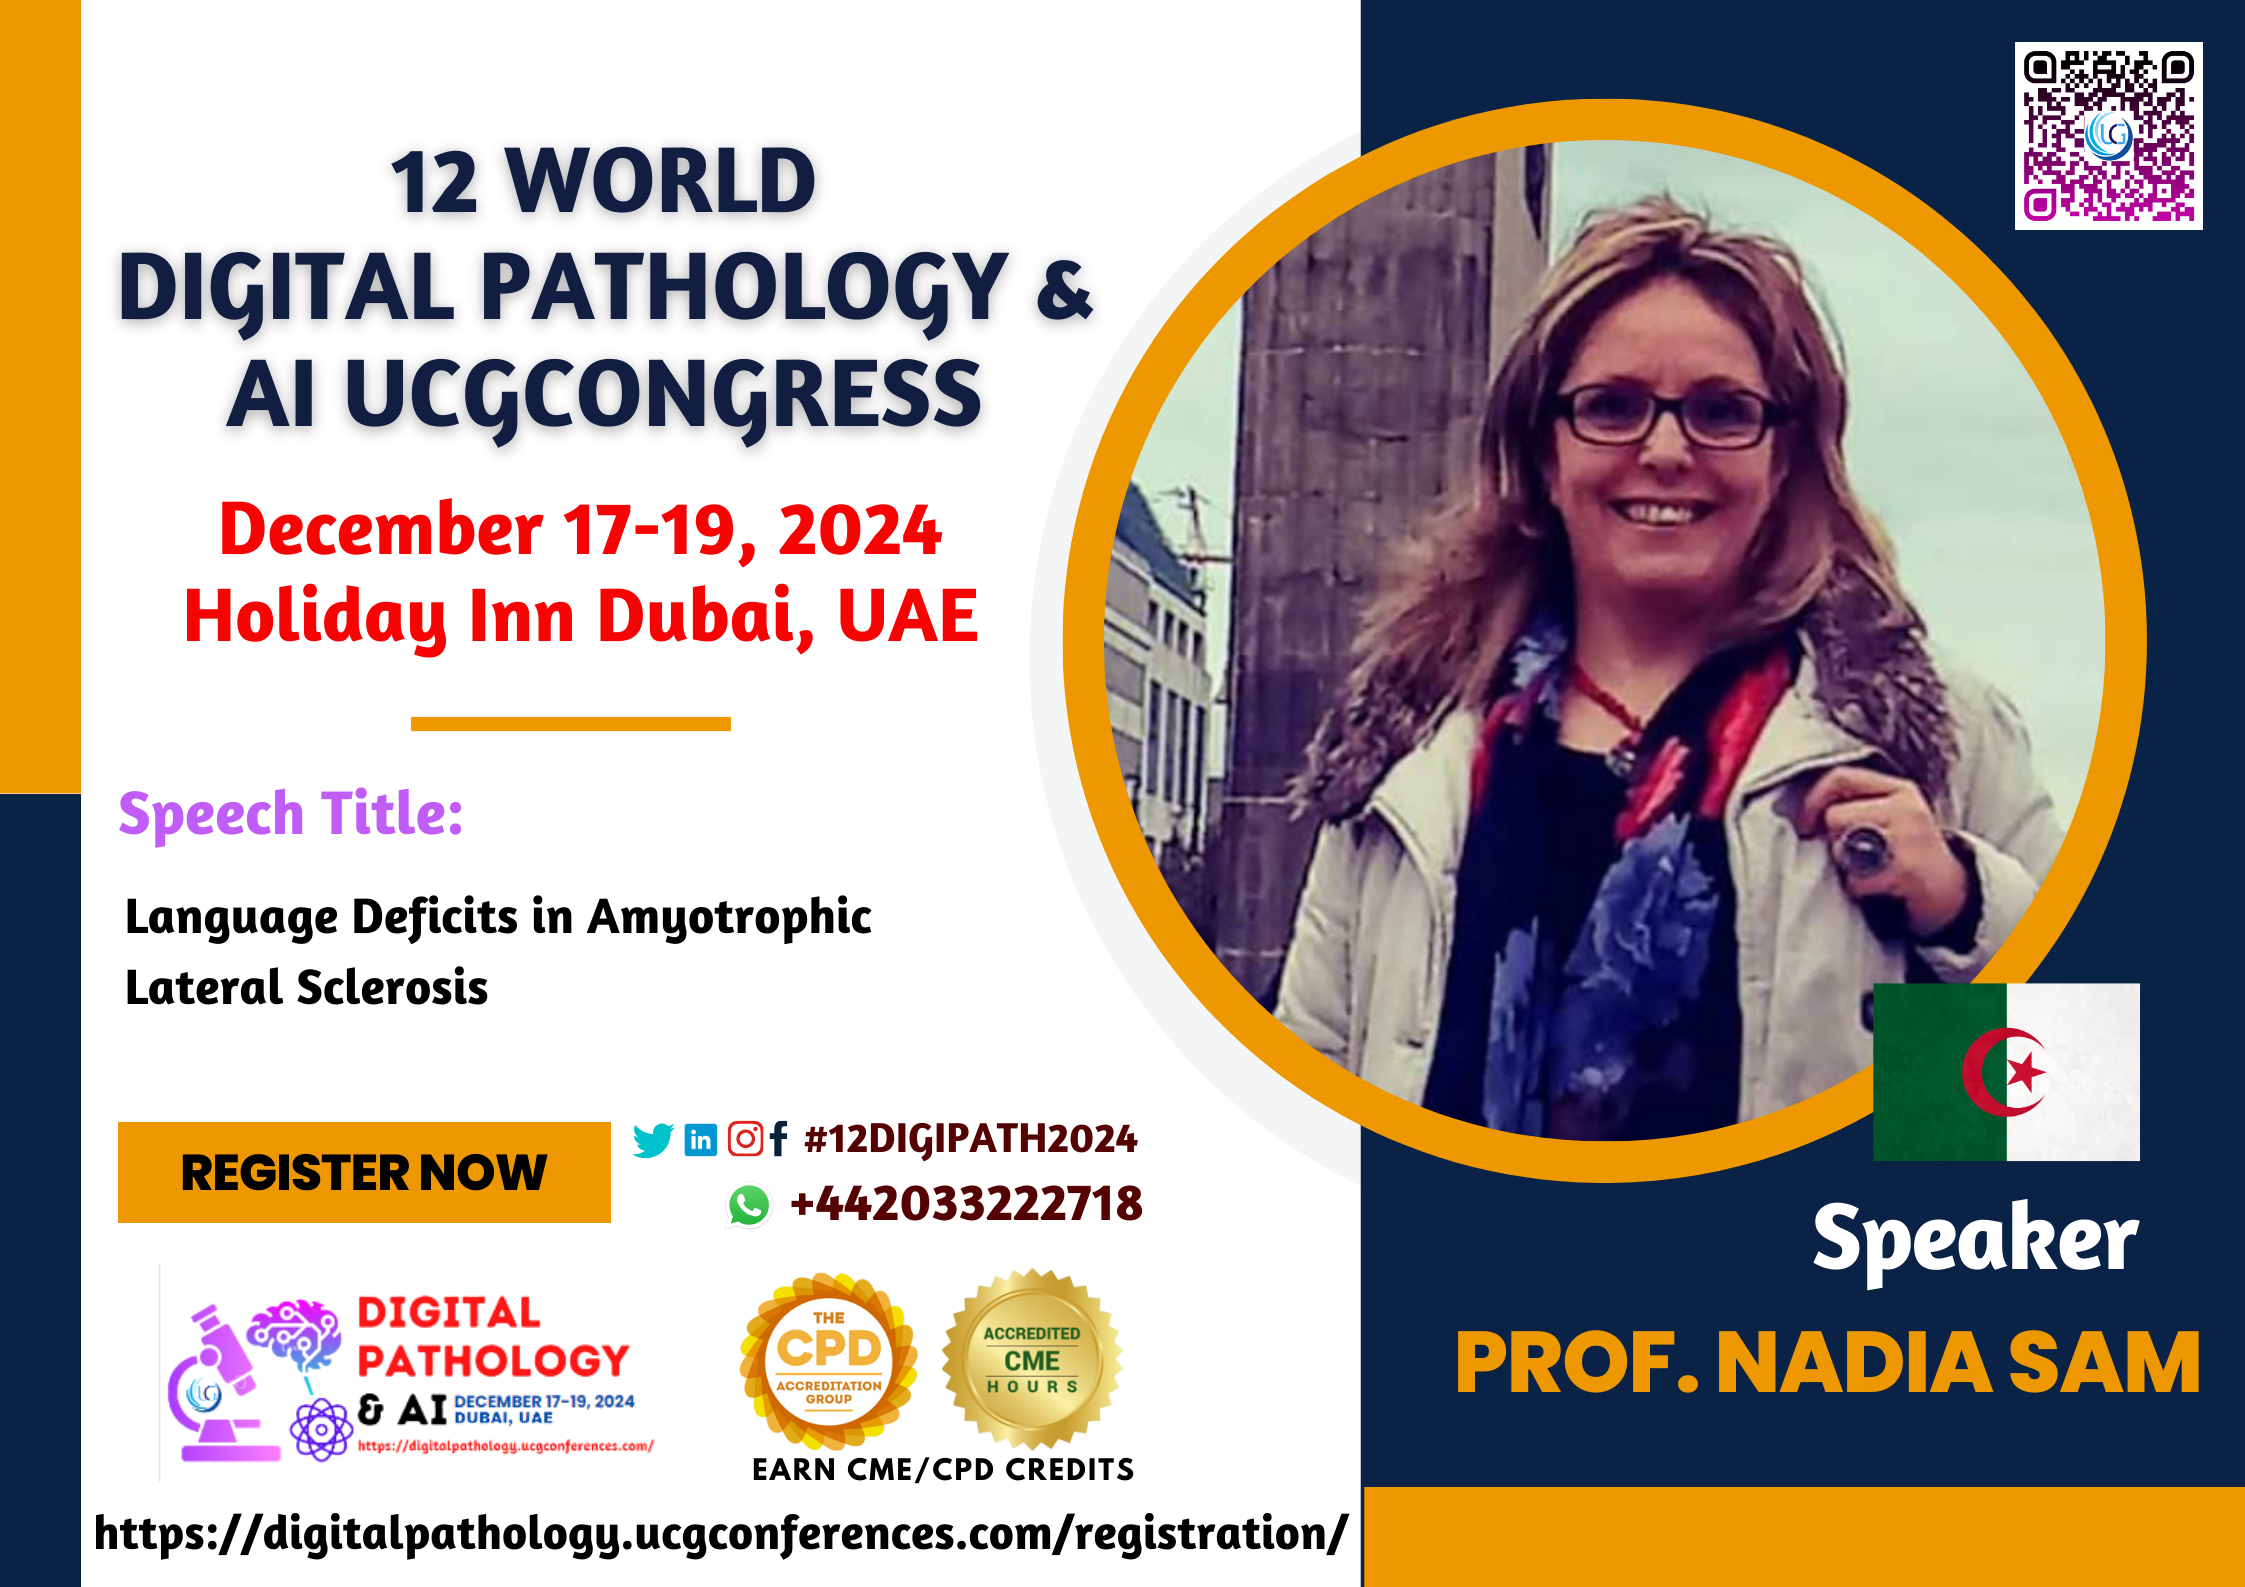 Prof. Nadia Sam_12 World Digital Pathology & AI UCGCongress